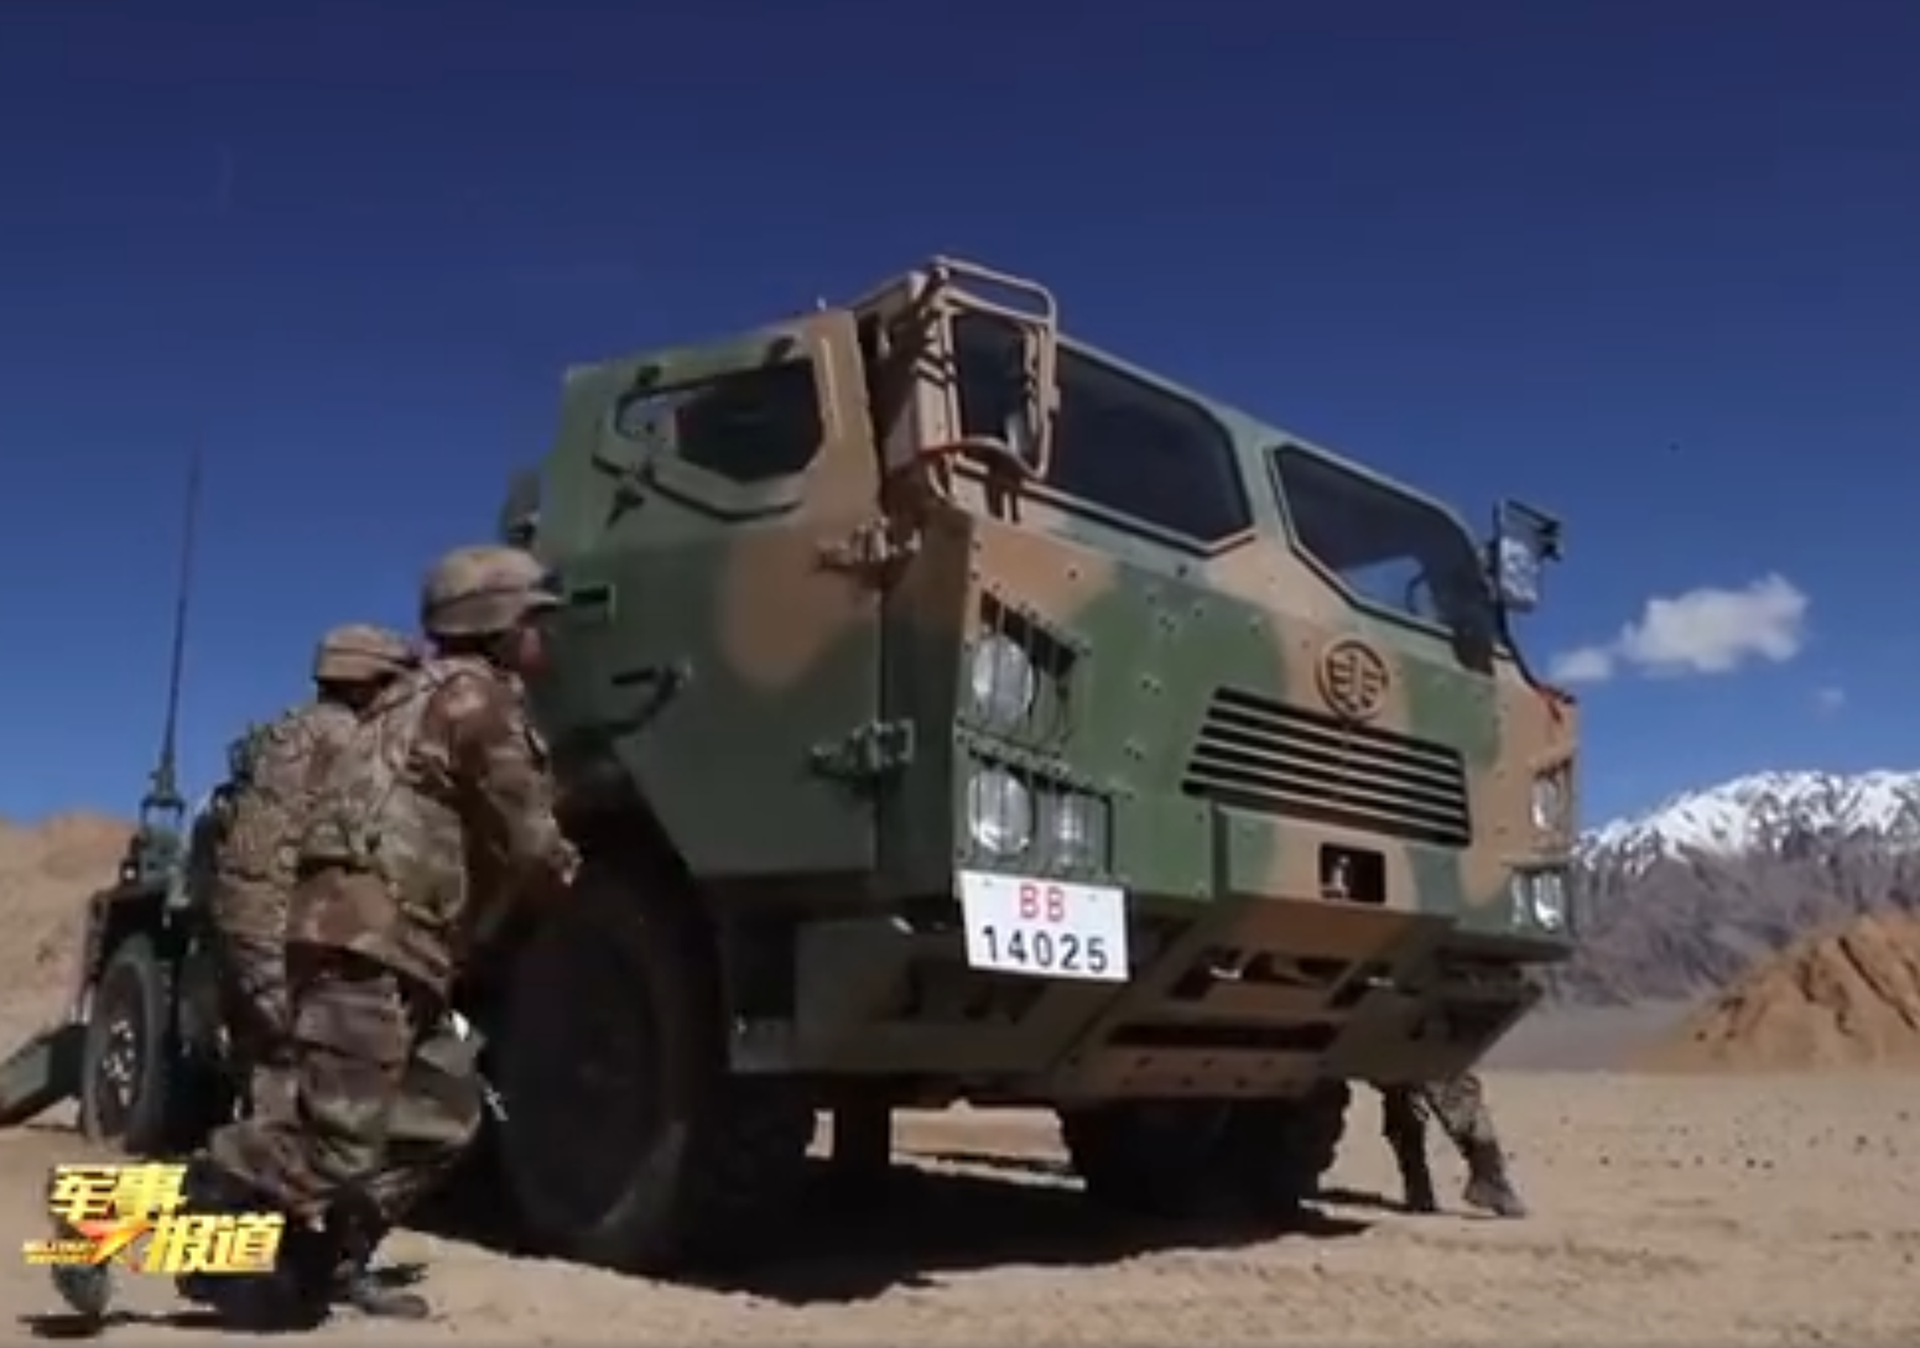 到达指定地点后，新疆军区官兵下车准备演练。（中国央视《军事报道》节目视频截图）